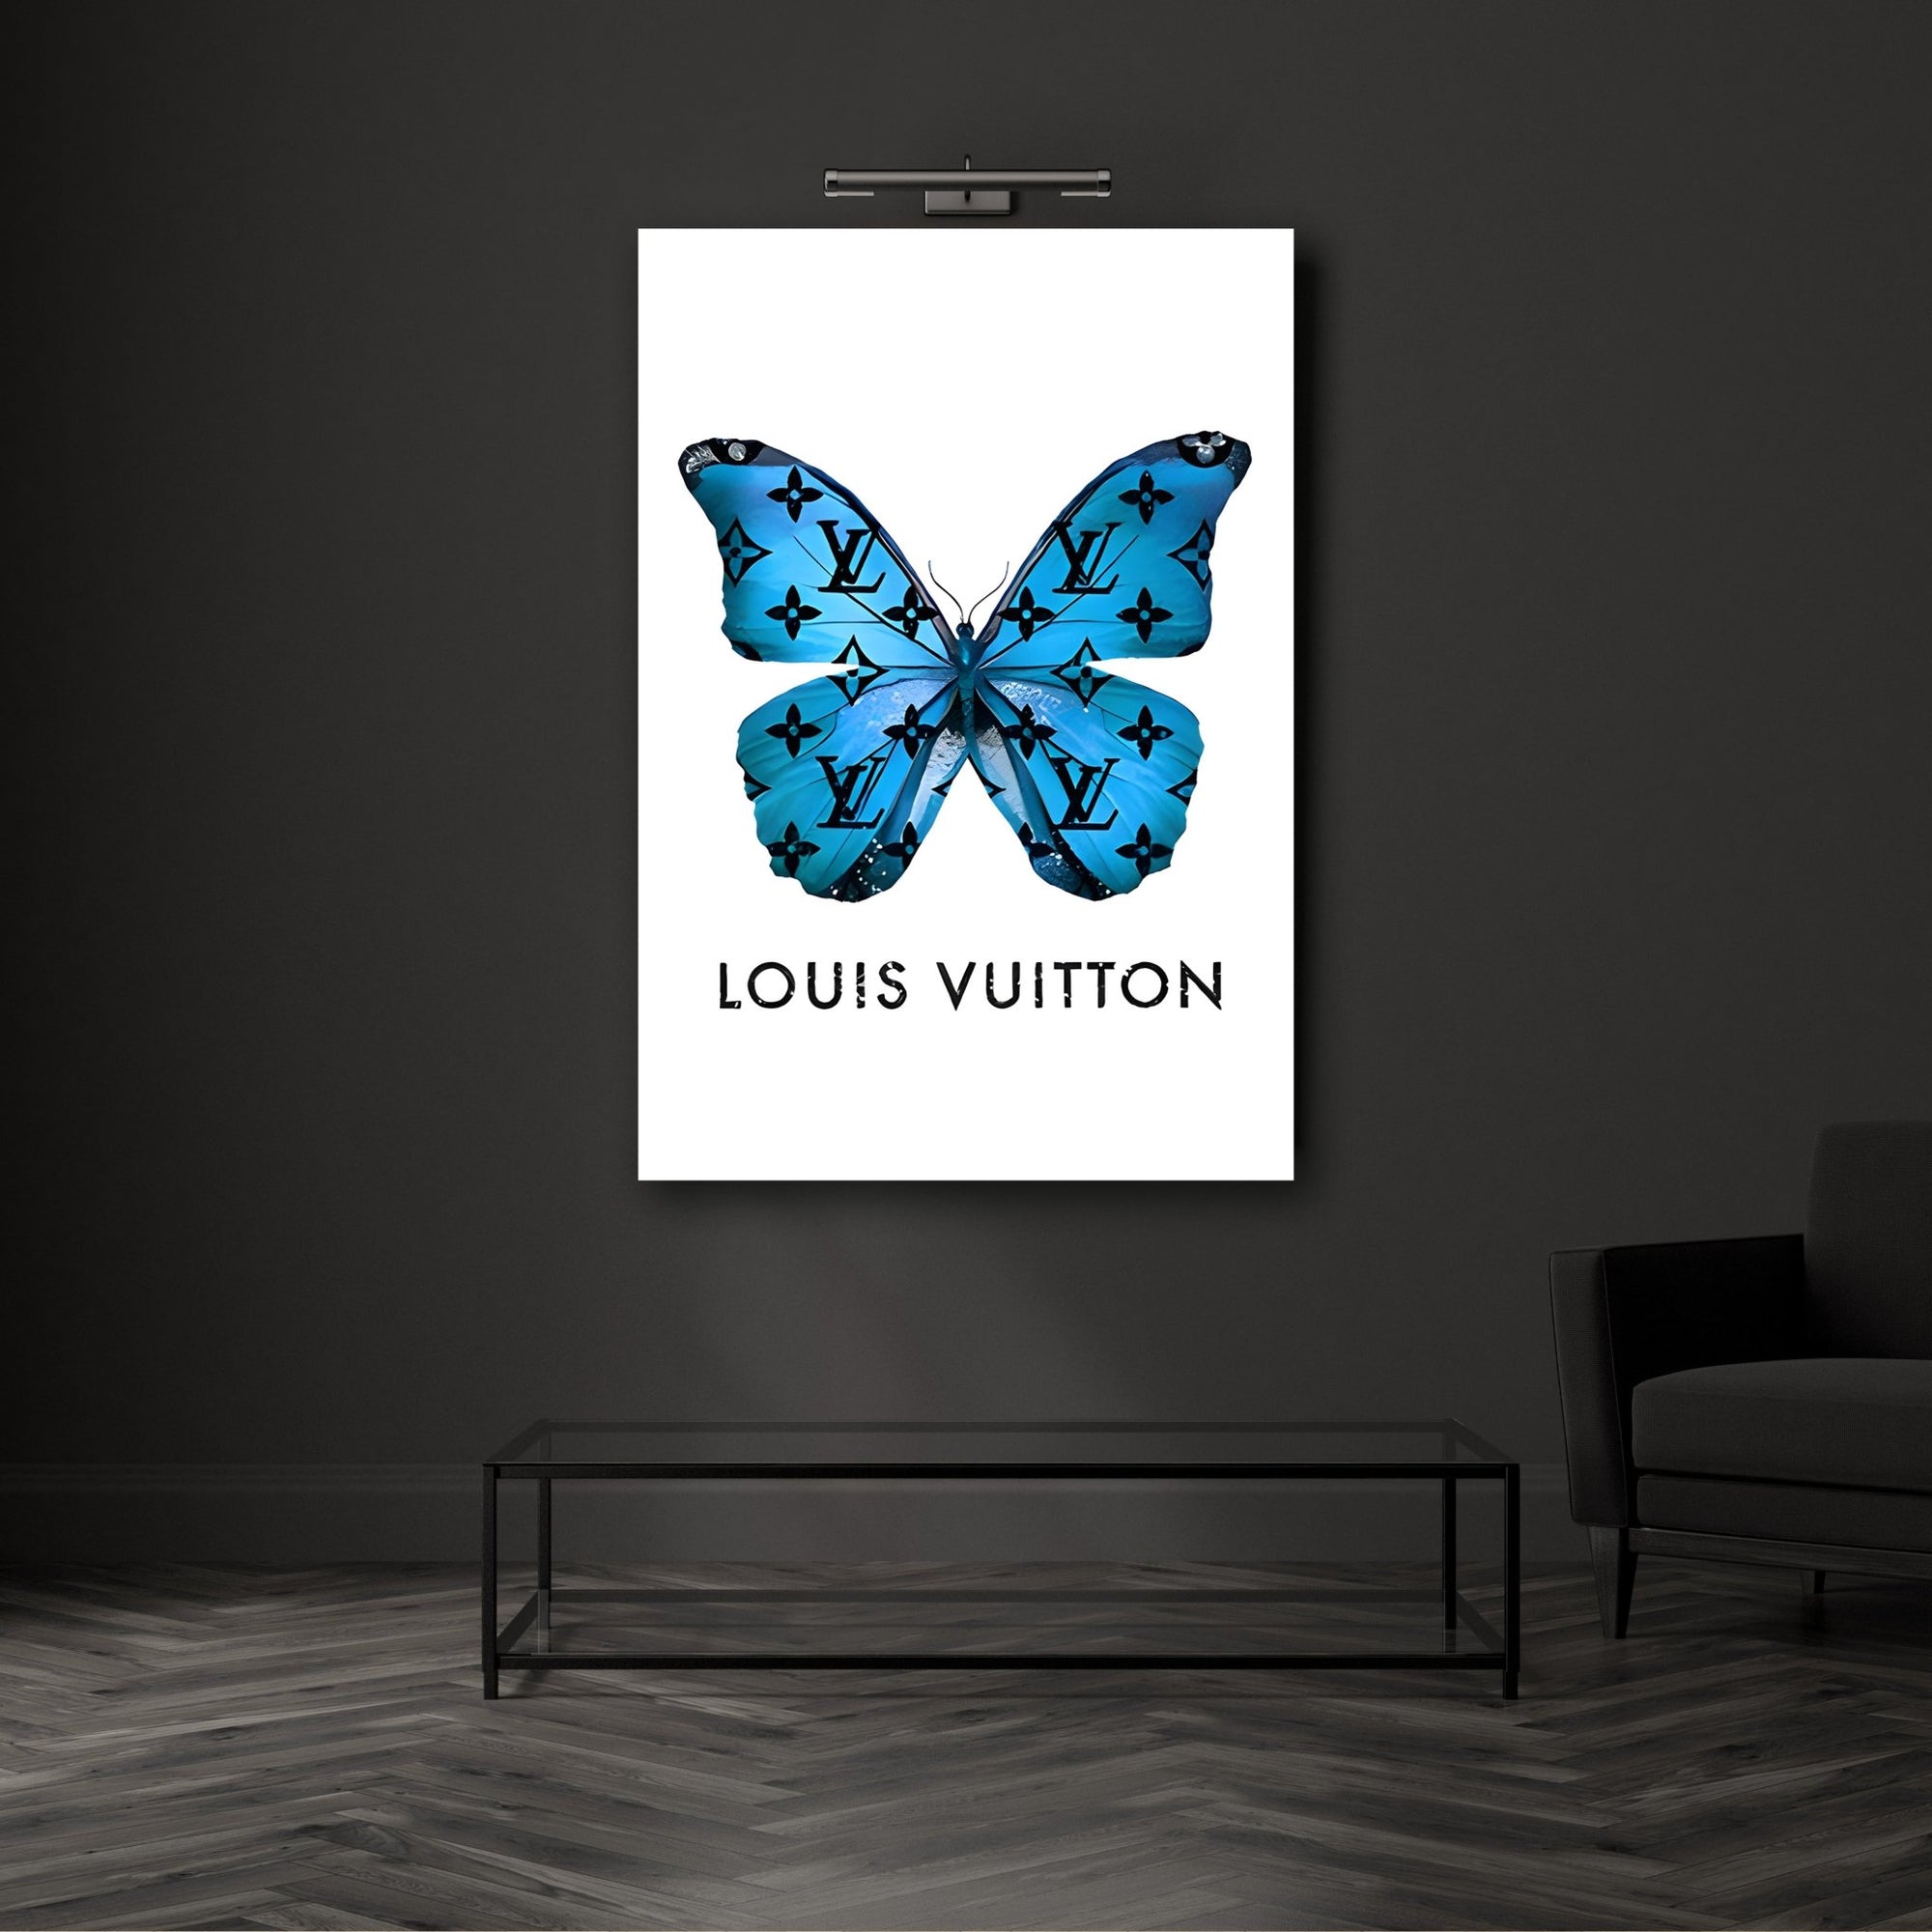 Tableau déco bouche lèvres Love It Louis Vuitton Pop Art - Tableau Deco